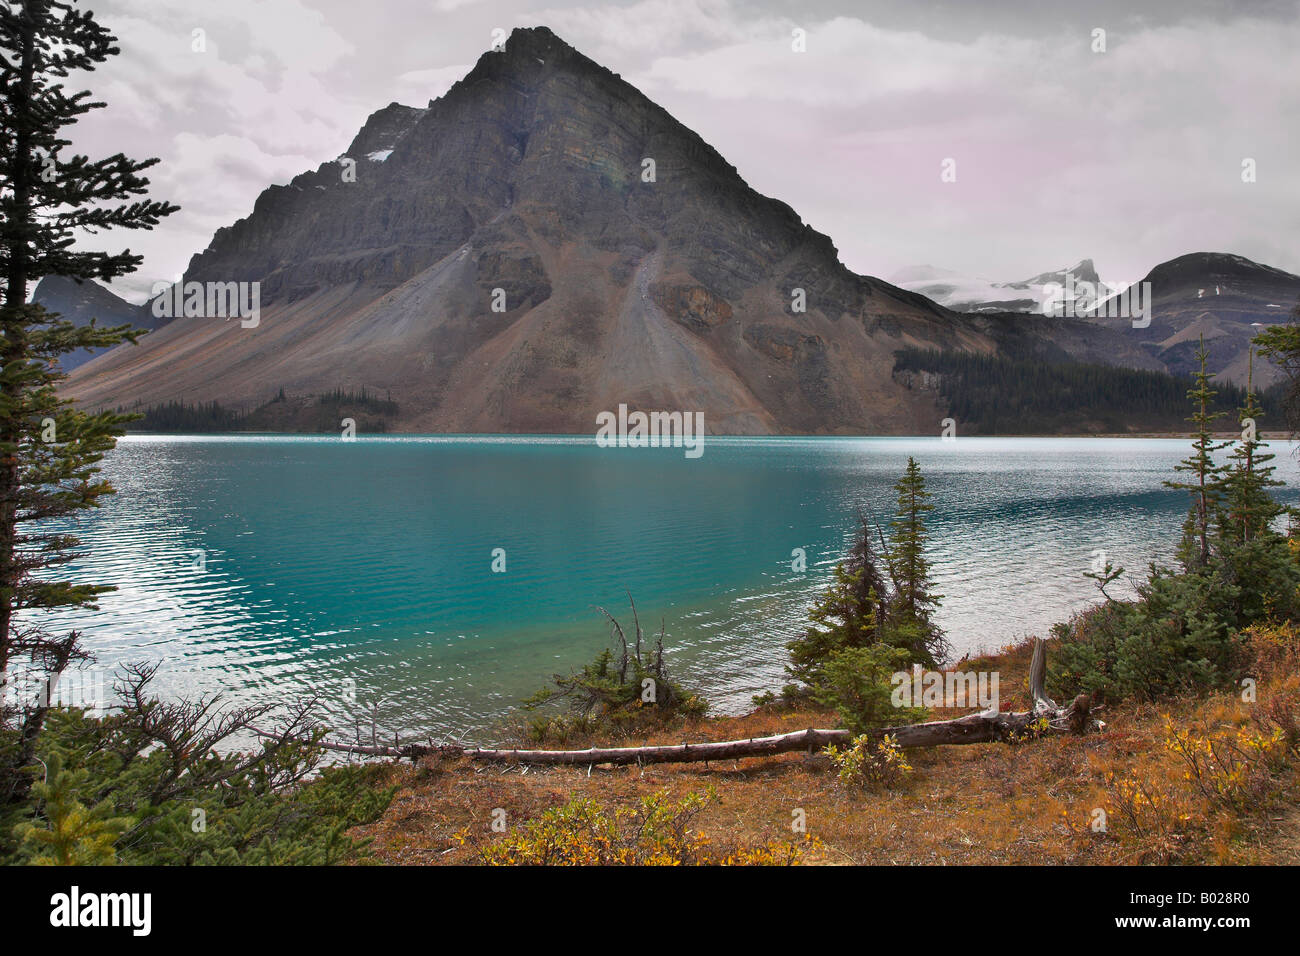 Berg von der richtigen pyramidale Form im Norden Kanadas spiegelt sich im See Stockfoto